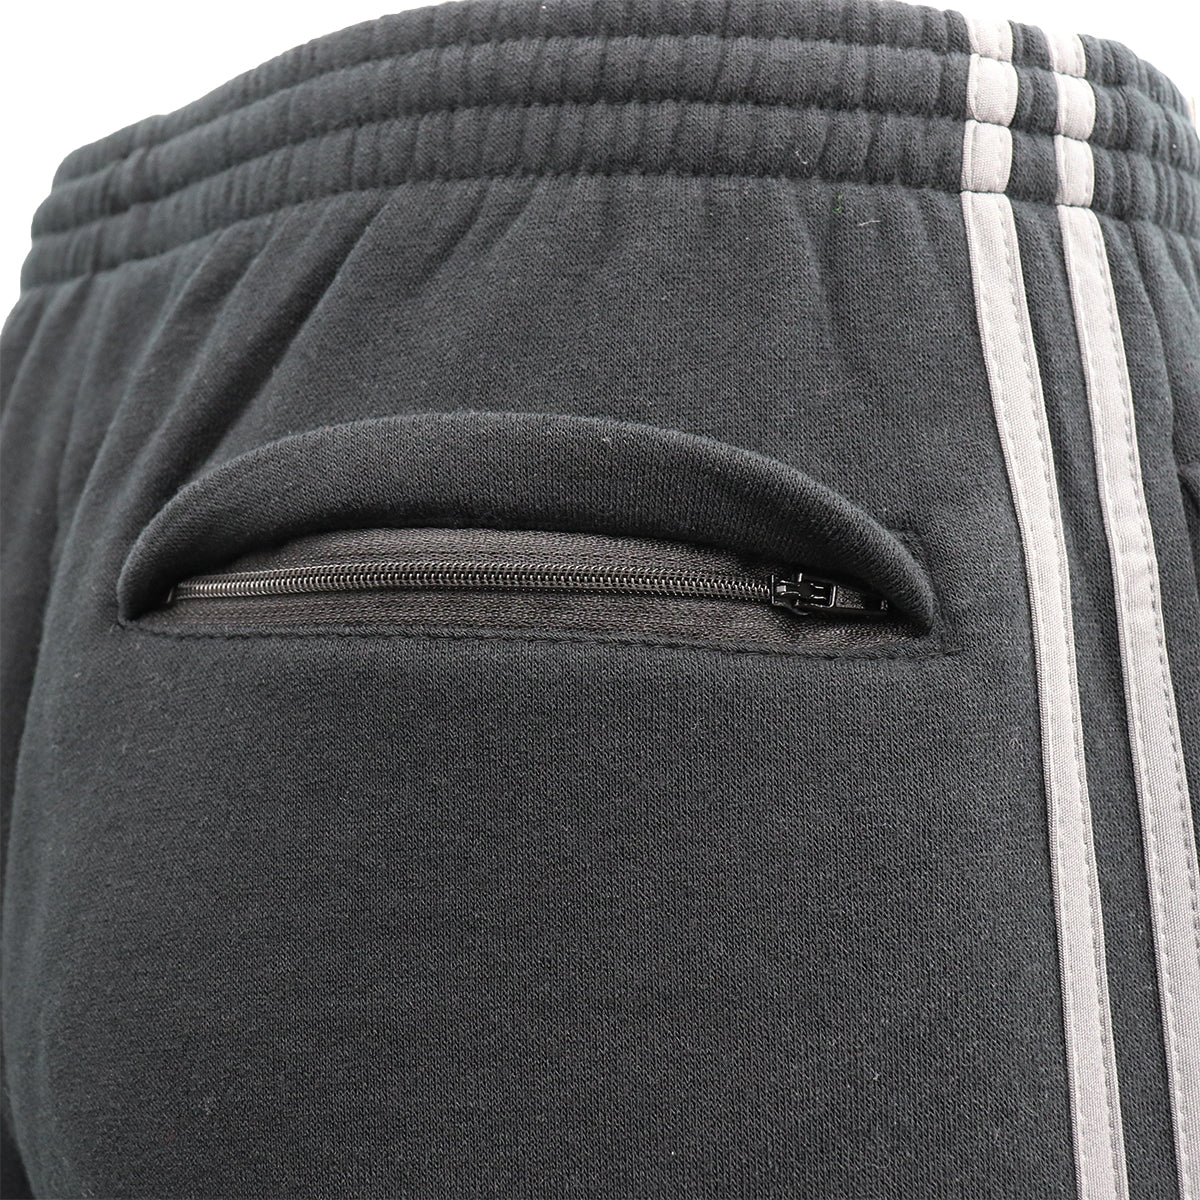 Men's Fleece Casual Sports Track Pants w Zip Pocket Striped Sweat Trousers S-6XL, Navy, 5XL